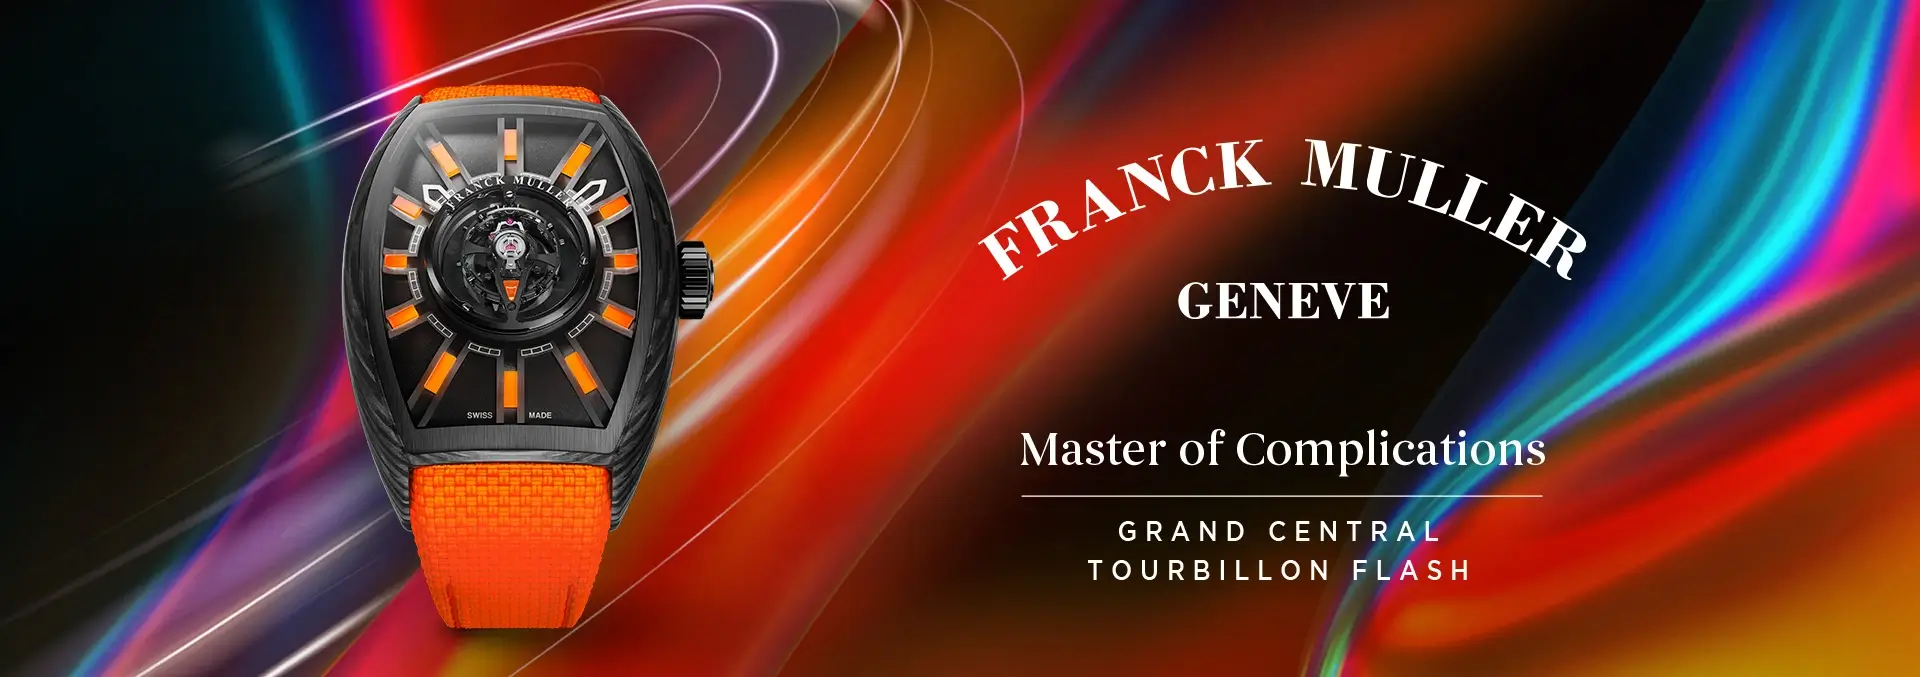 Franck Muller Grand Central Tourbillon Flash At Cortina Watch Db